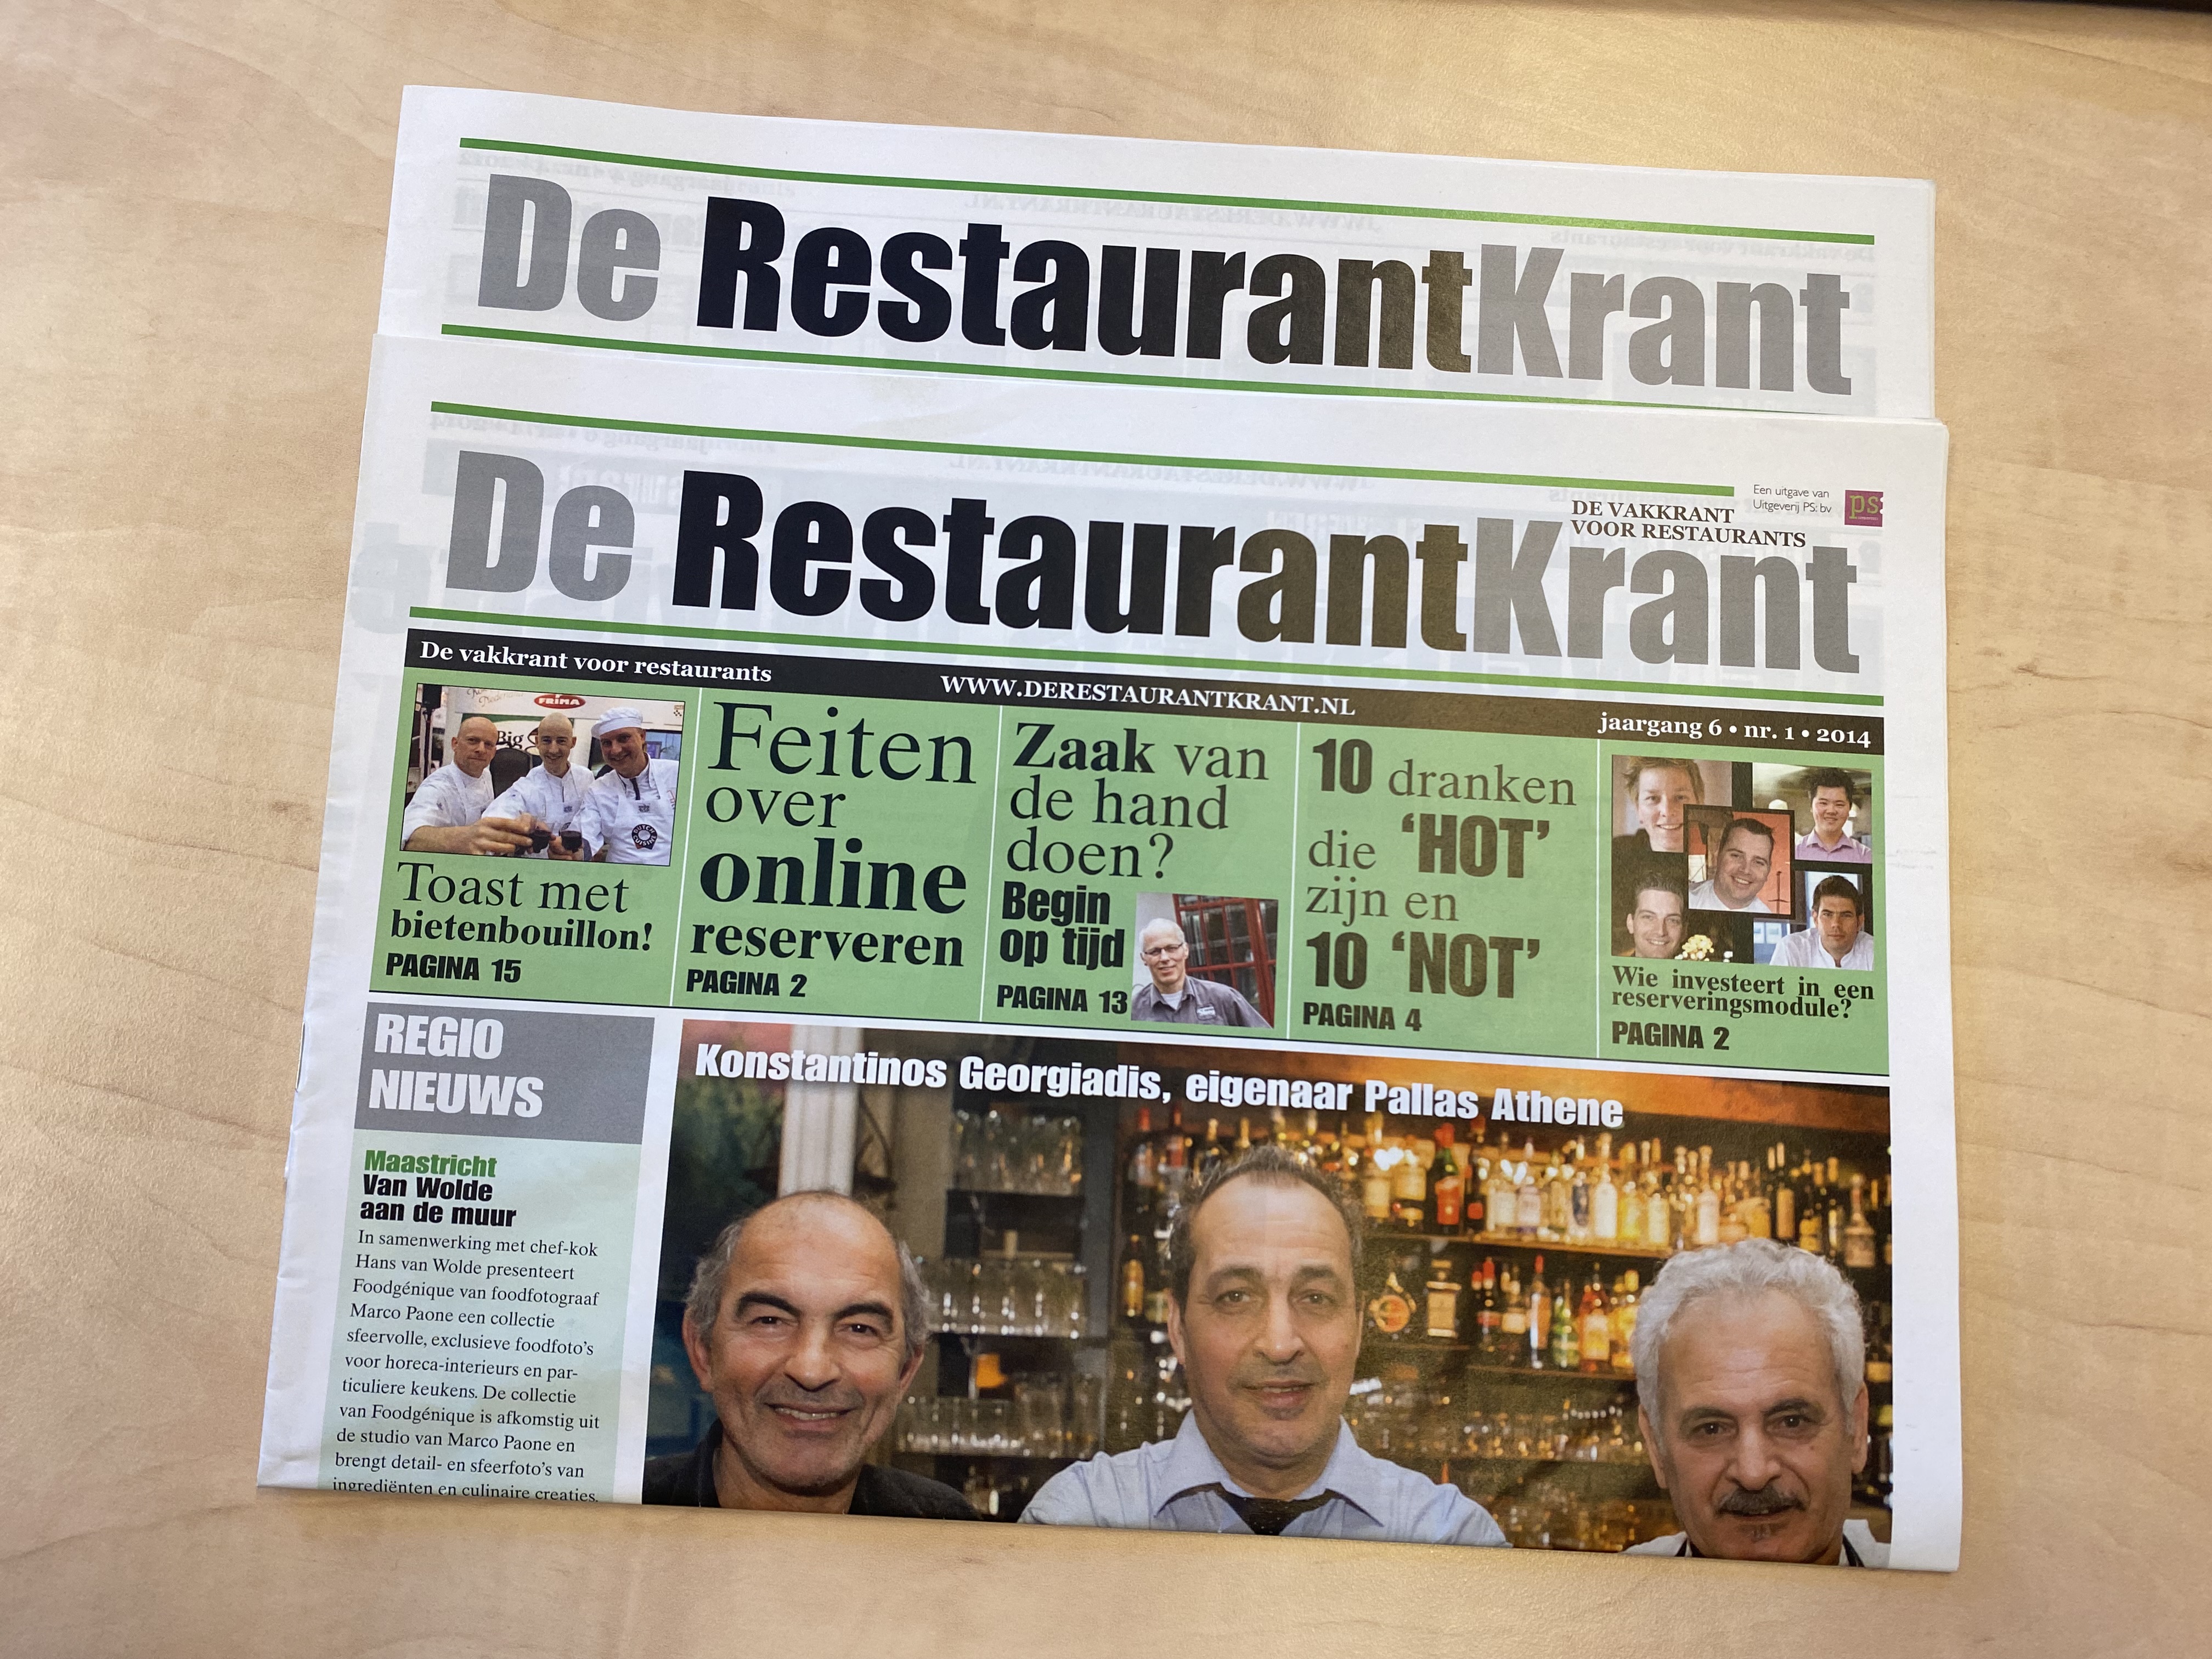 15 jaar De RestaurantKrant (2014): Konstantinos Georgiadis over 'Griekse oase van gastvrijheid'